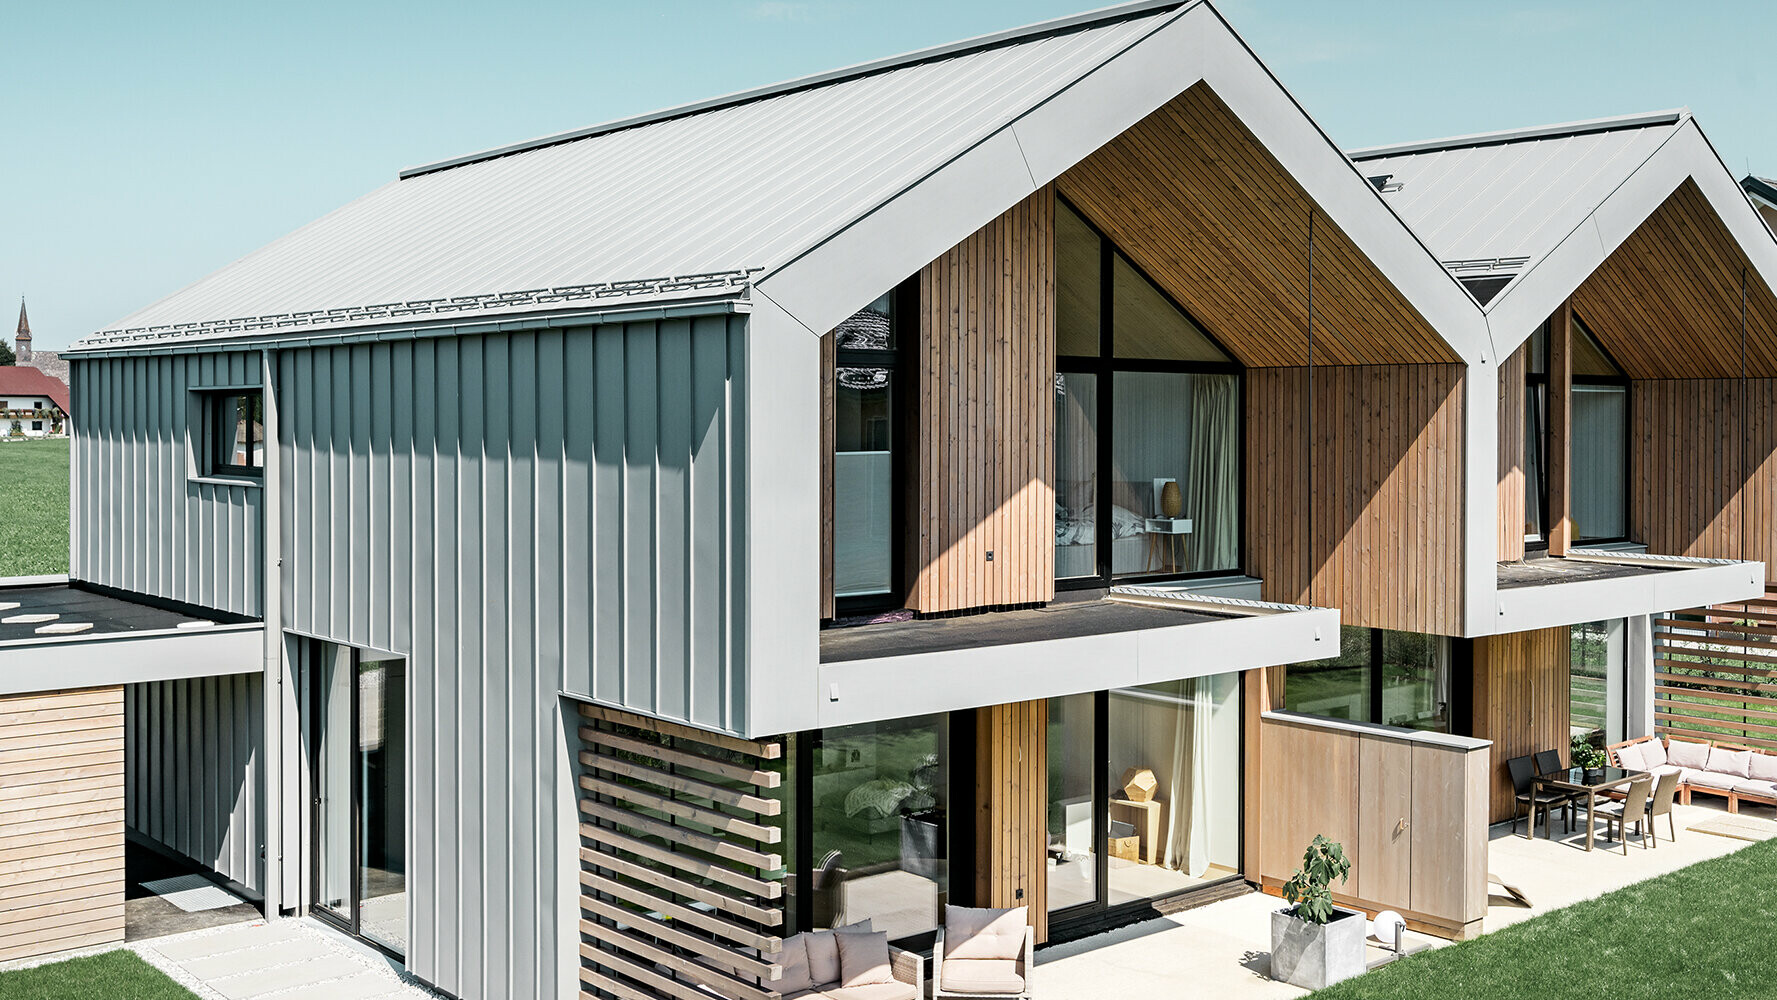 Einfamilienhaus mit PREFALZ Dacheindeckung und Fassadenverkleidung in der Farbe Patina Grau